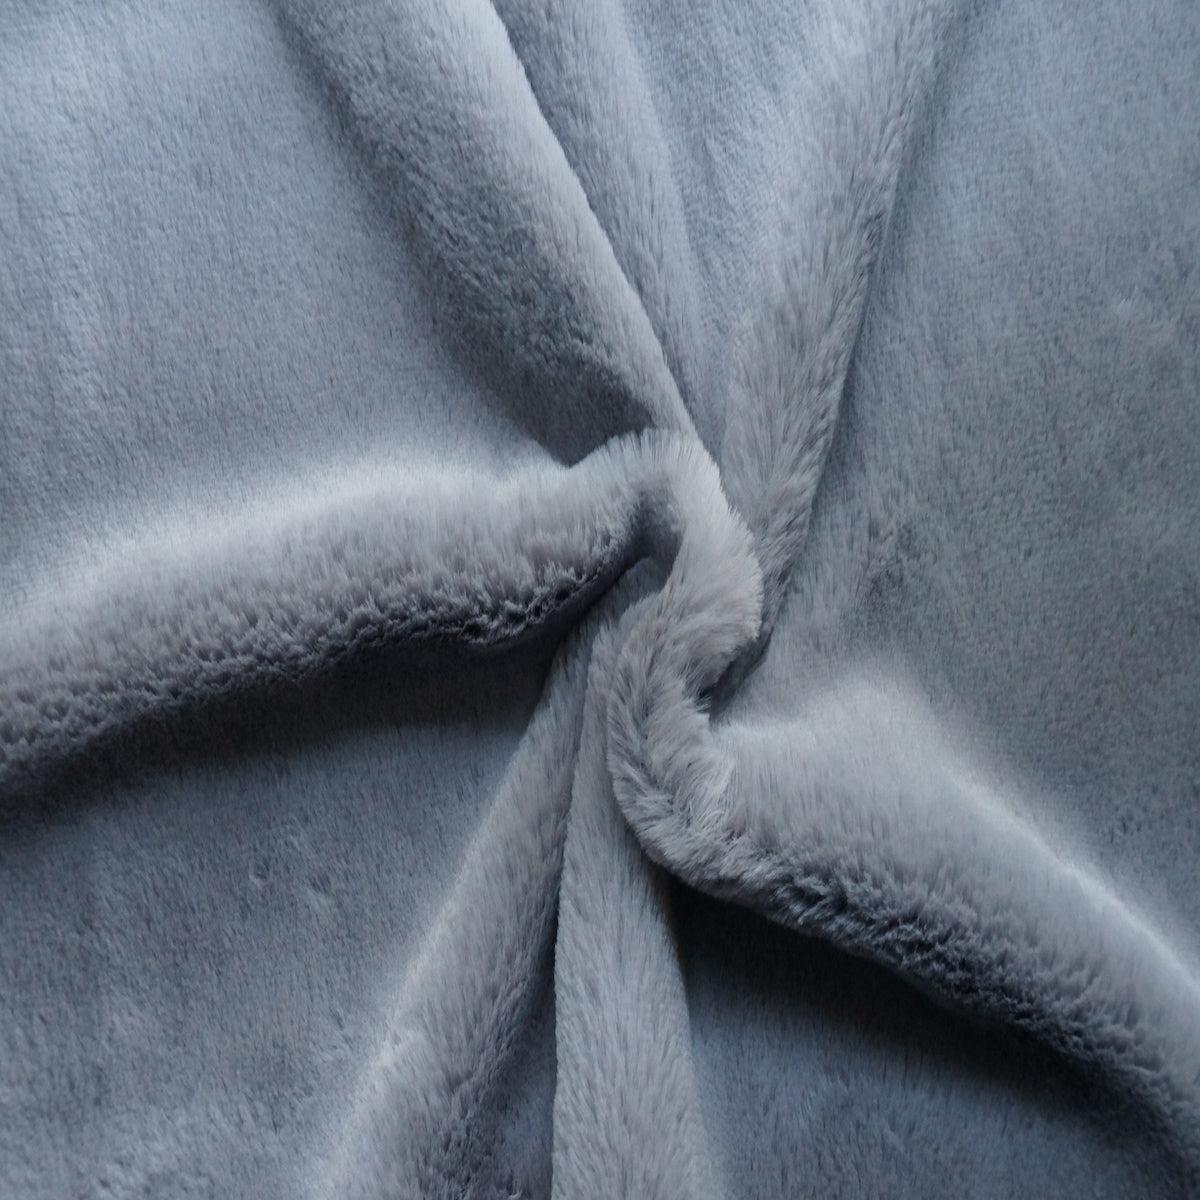 Charcoal Gray Rex Rabbit Minky Faux Fur Fabric - Fashion Fabrics LLC